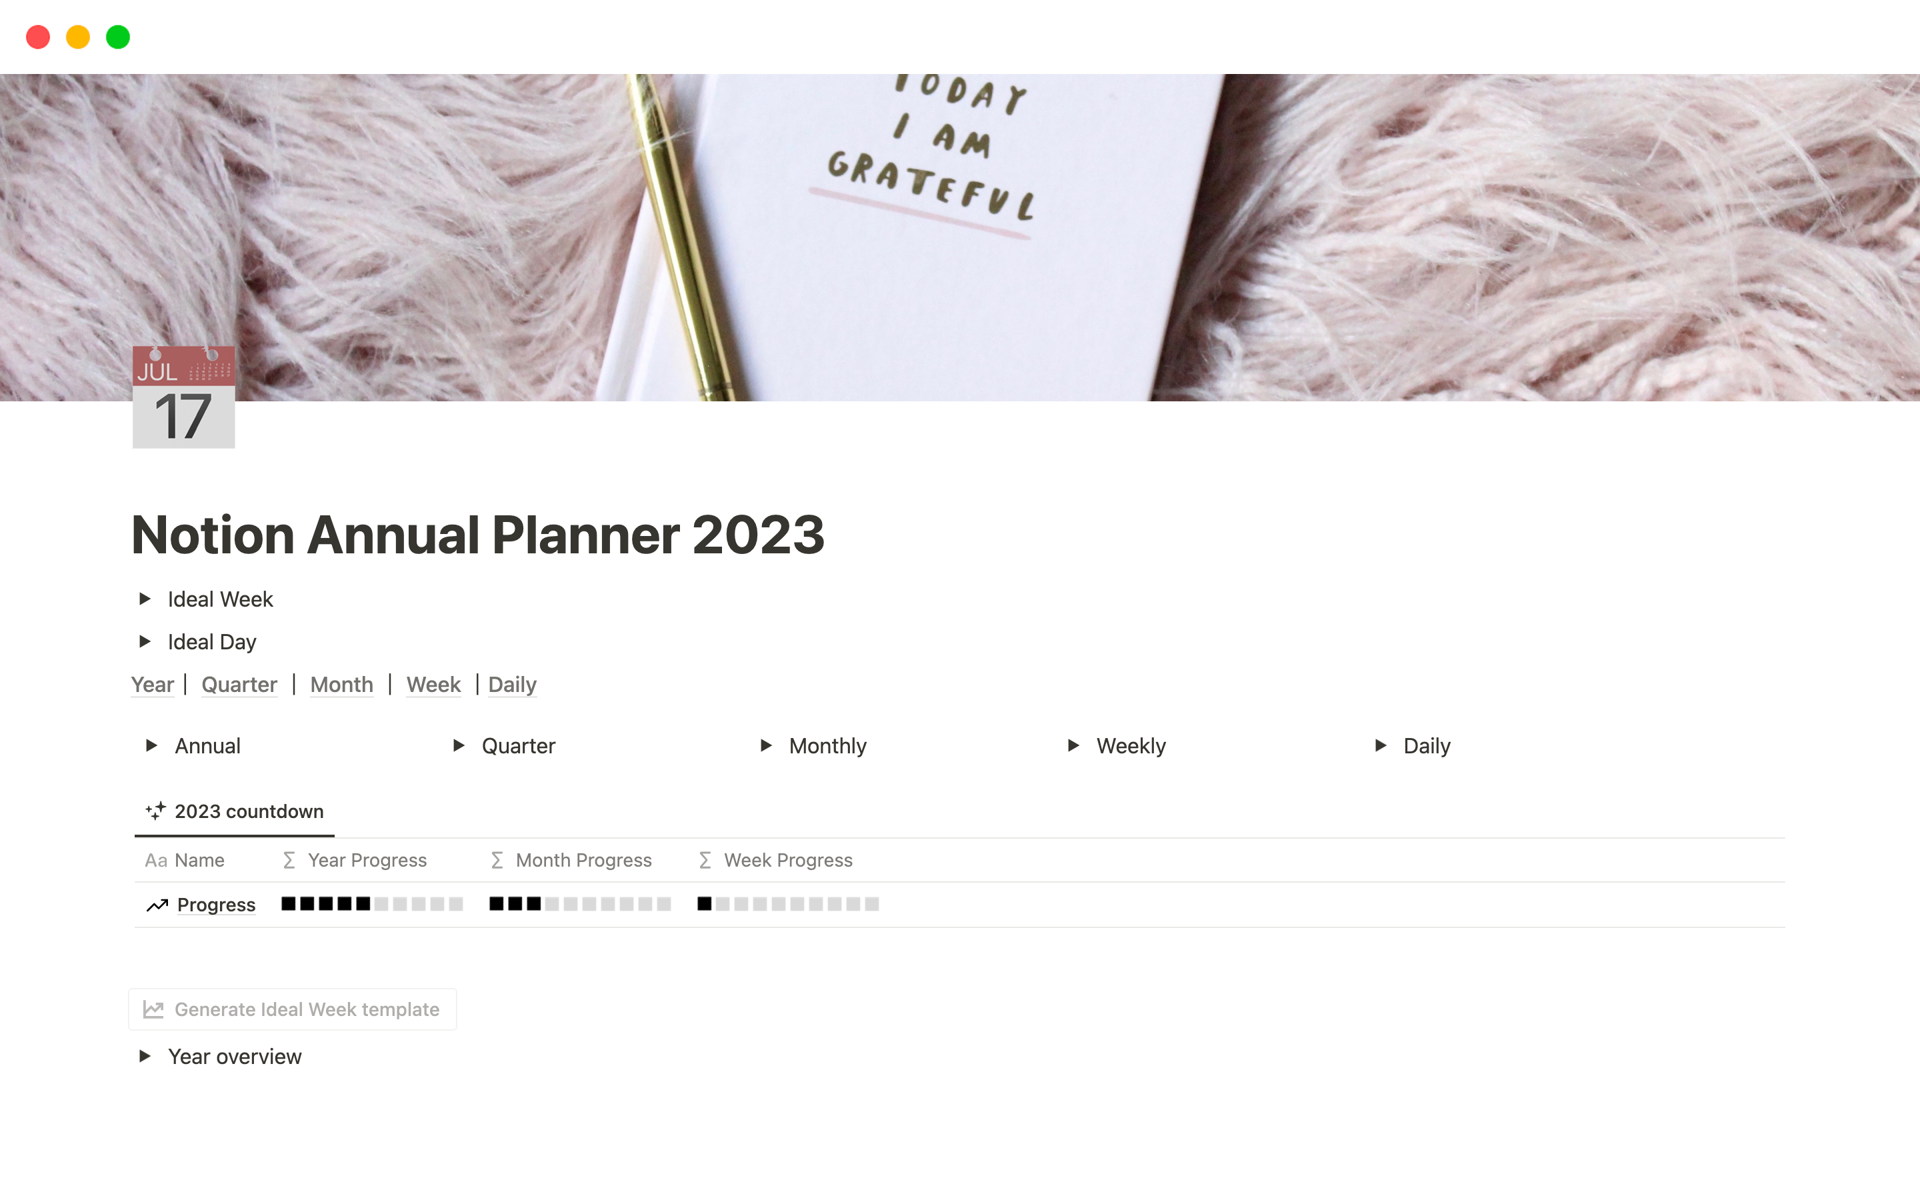 Vista previa de una plantilla para Notion Annual Planner 2023